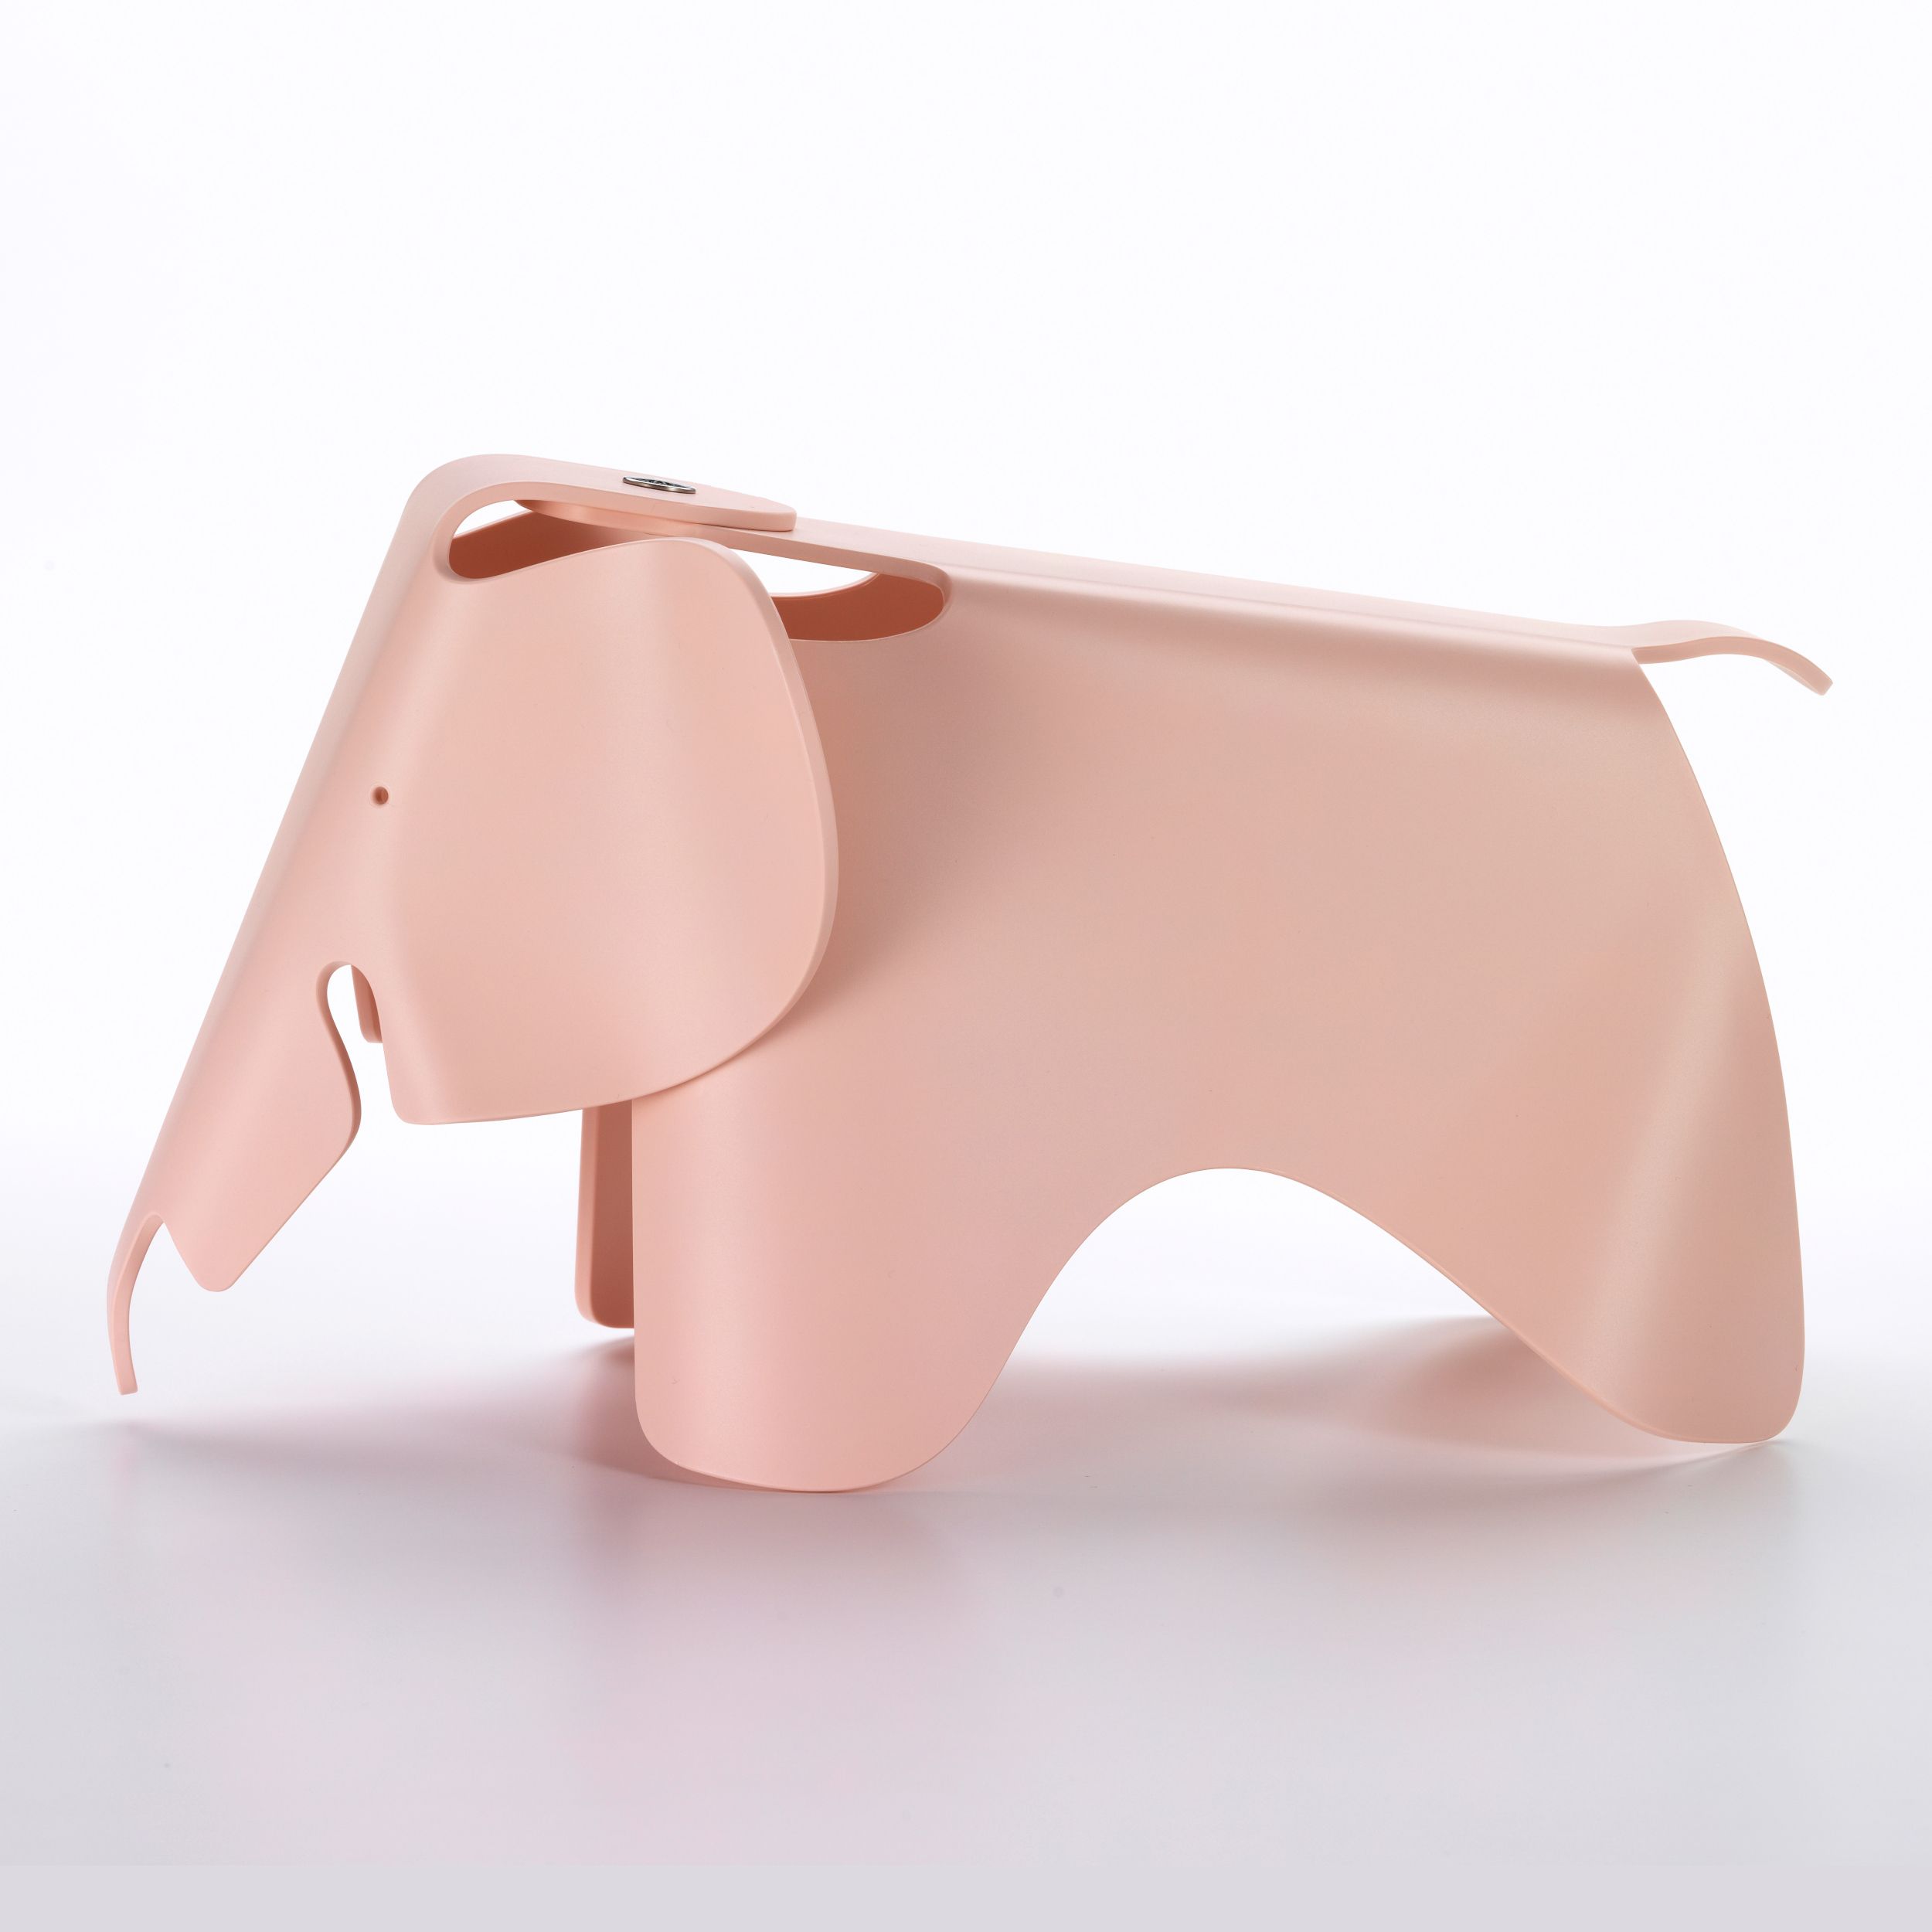 Eames Elephant von Vitra in pink als Freisteller seitlich